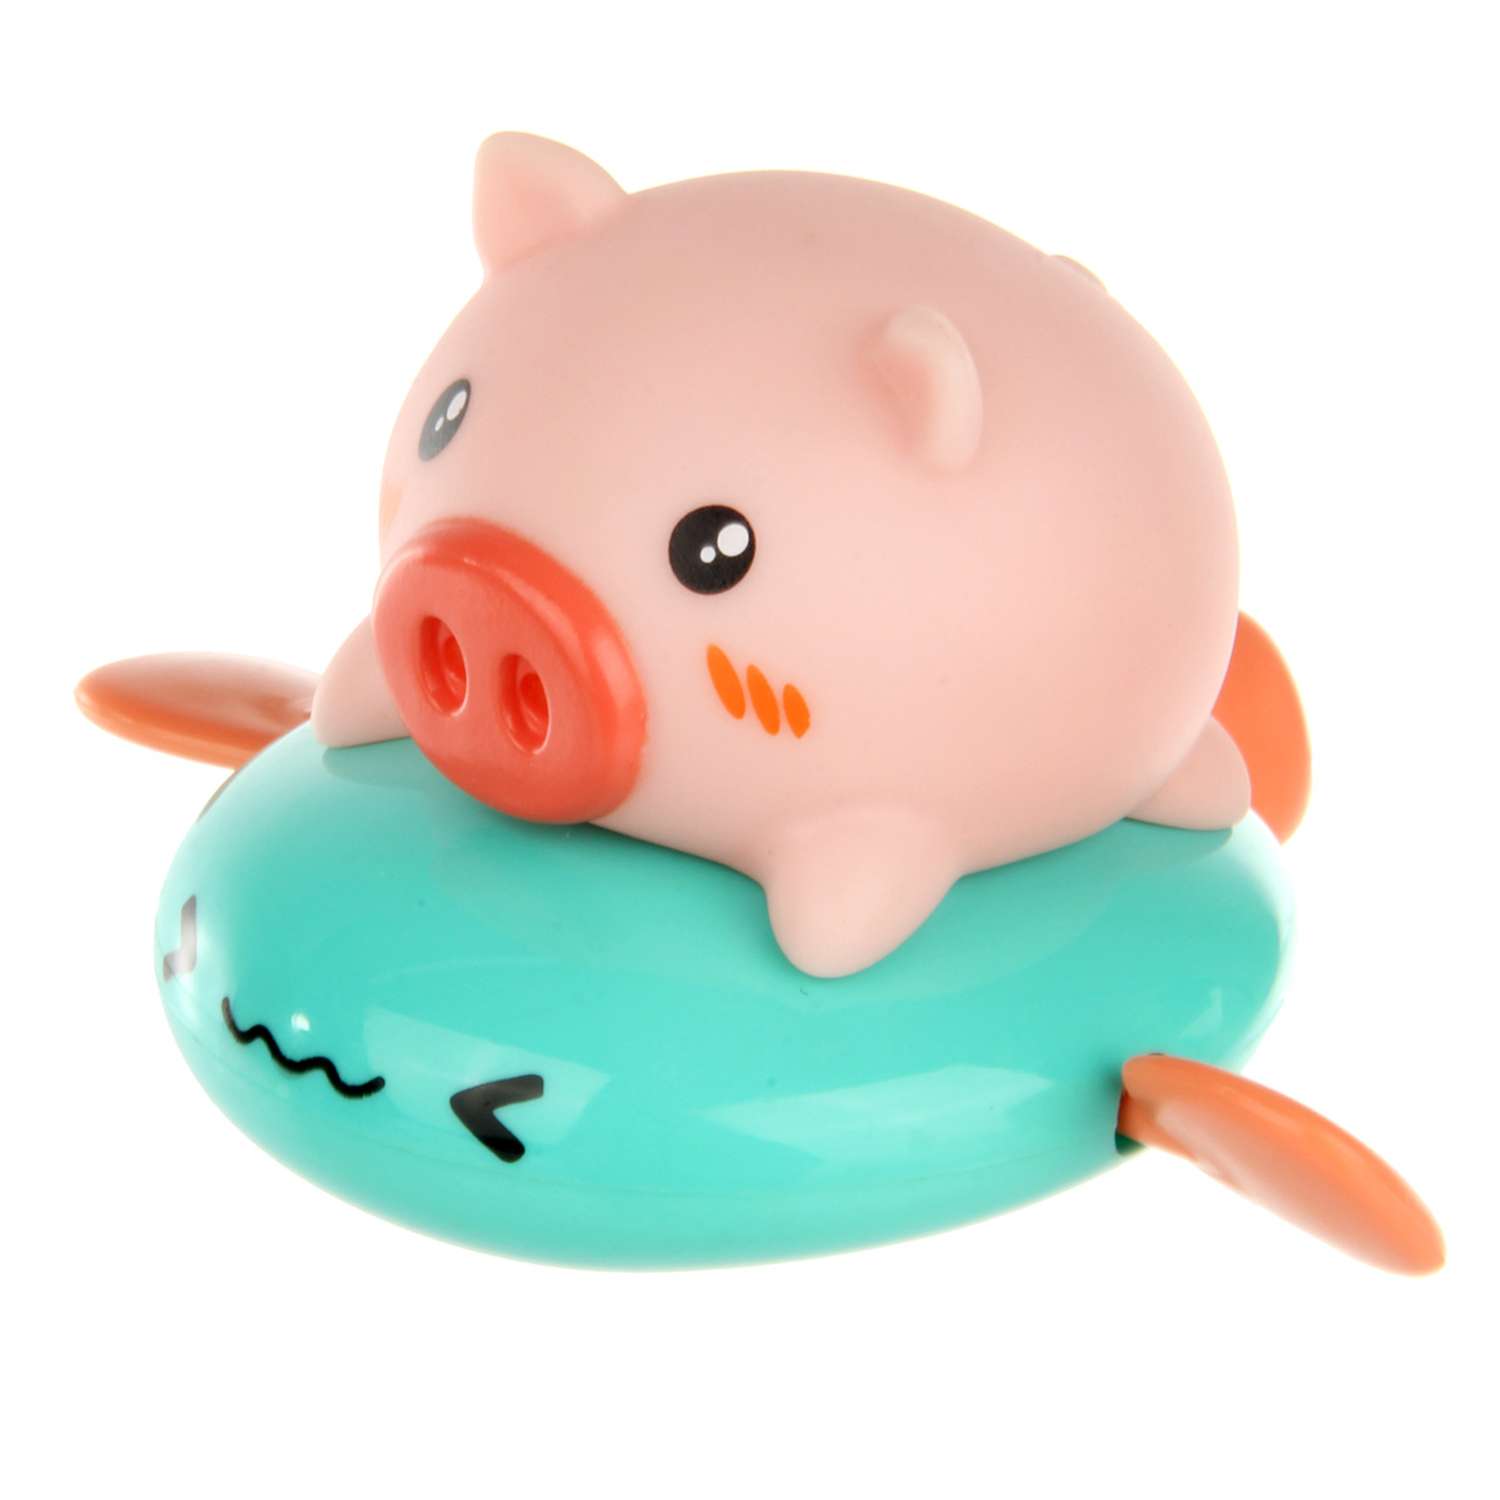 Игрушка для купания Ути Пути Свинка голубая на подушке - фото 2